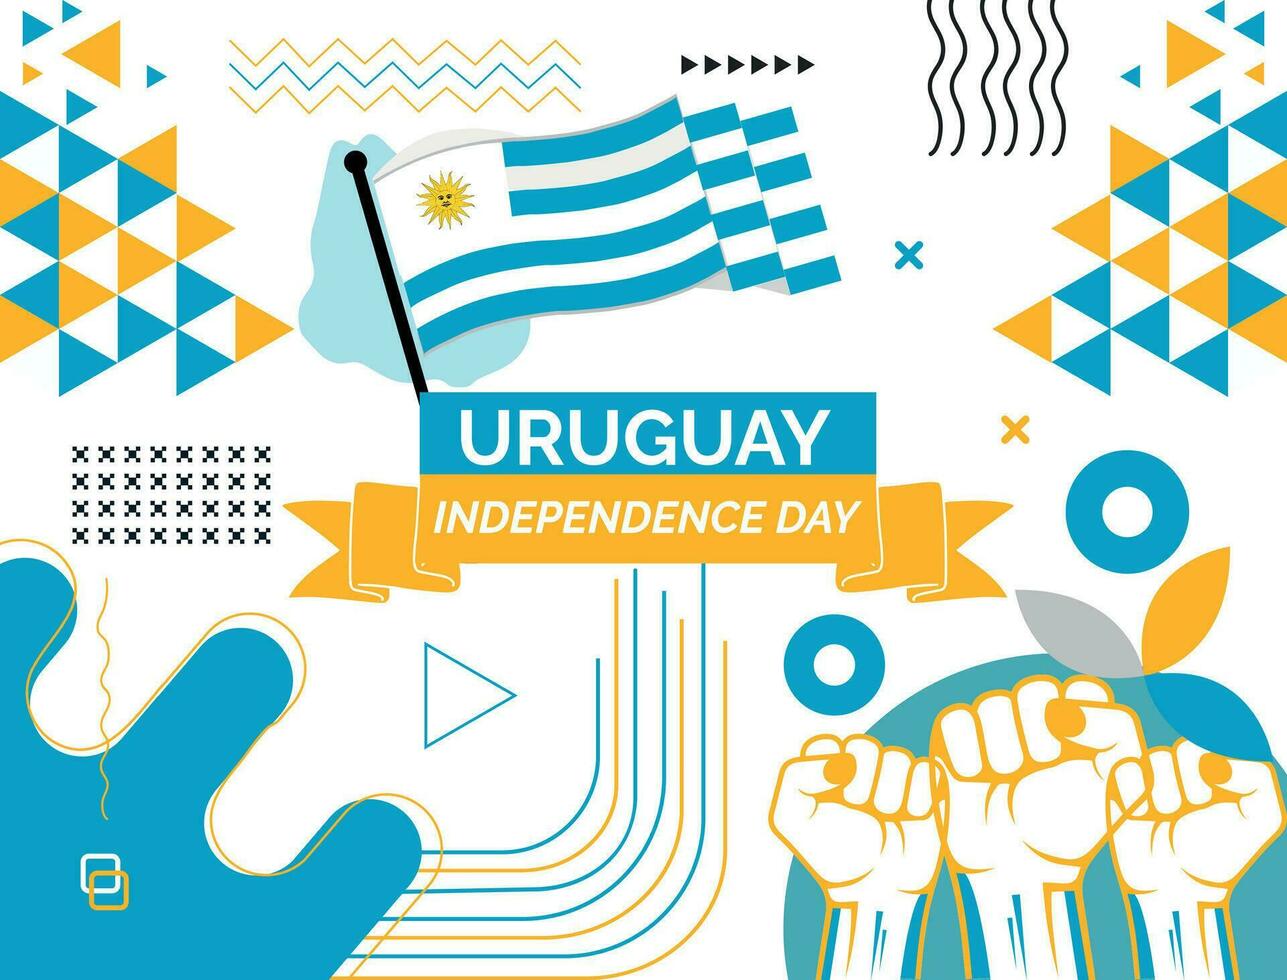 Uruguay carte et élevé poings. nationale journée ou indépendance journée conception pour Uruguay fête. moderne rétro conception avec abstrait Icônes. vecteur illustration.